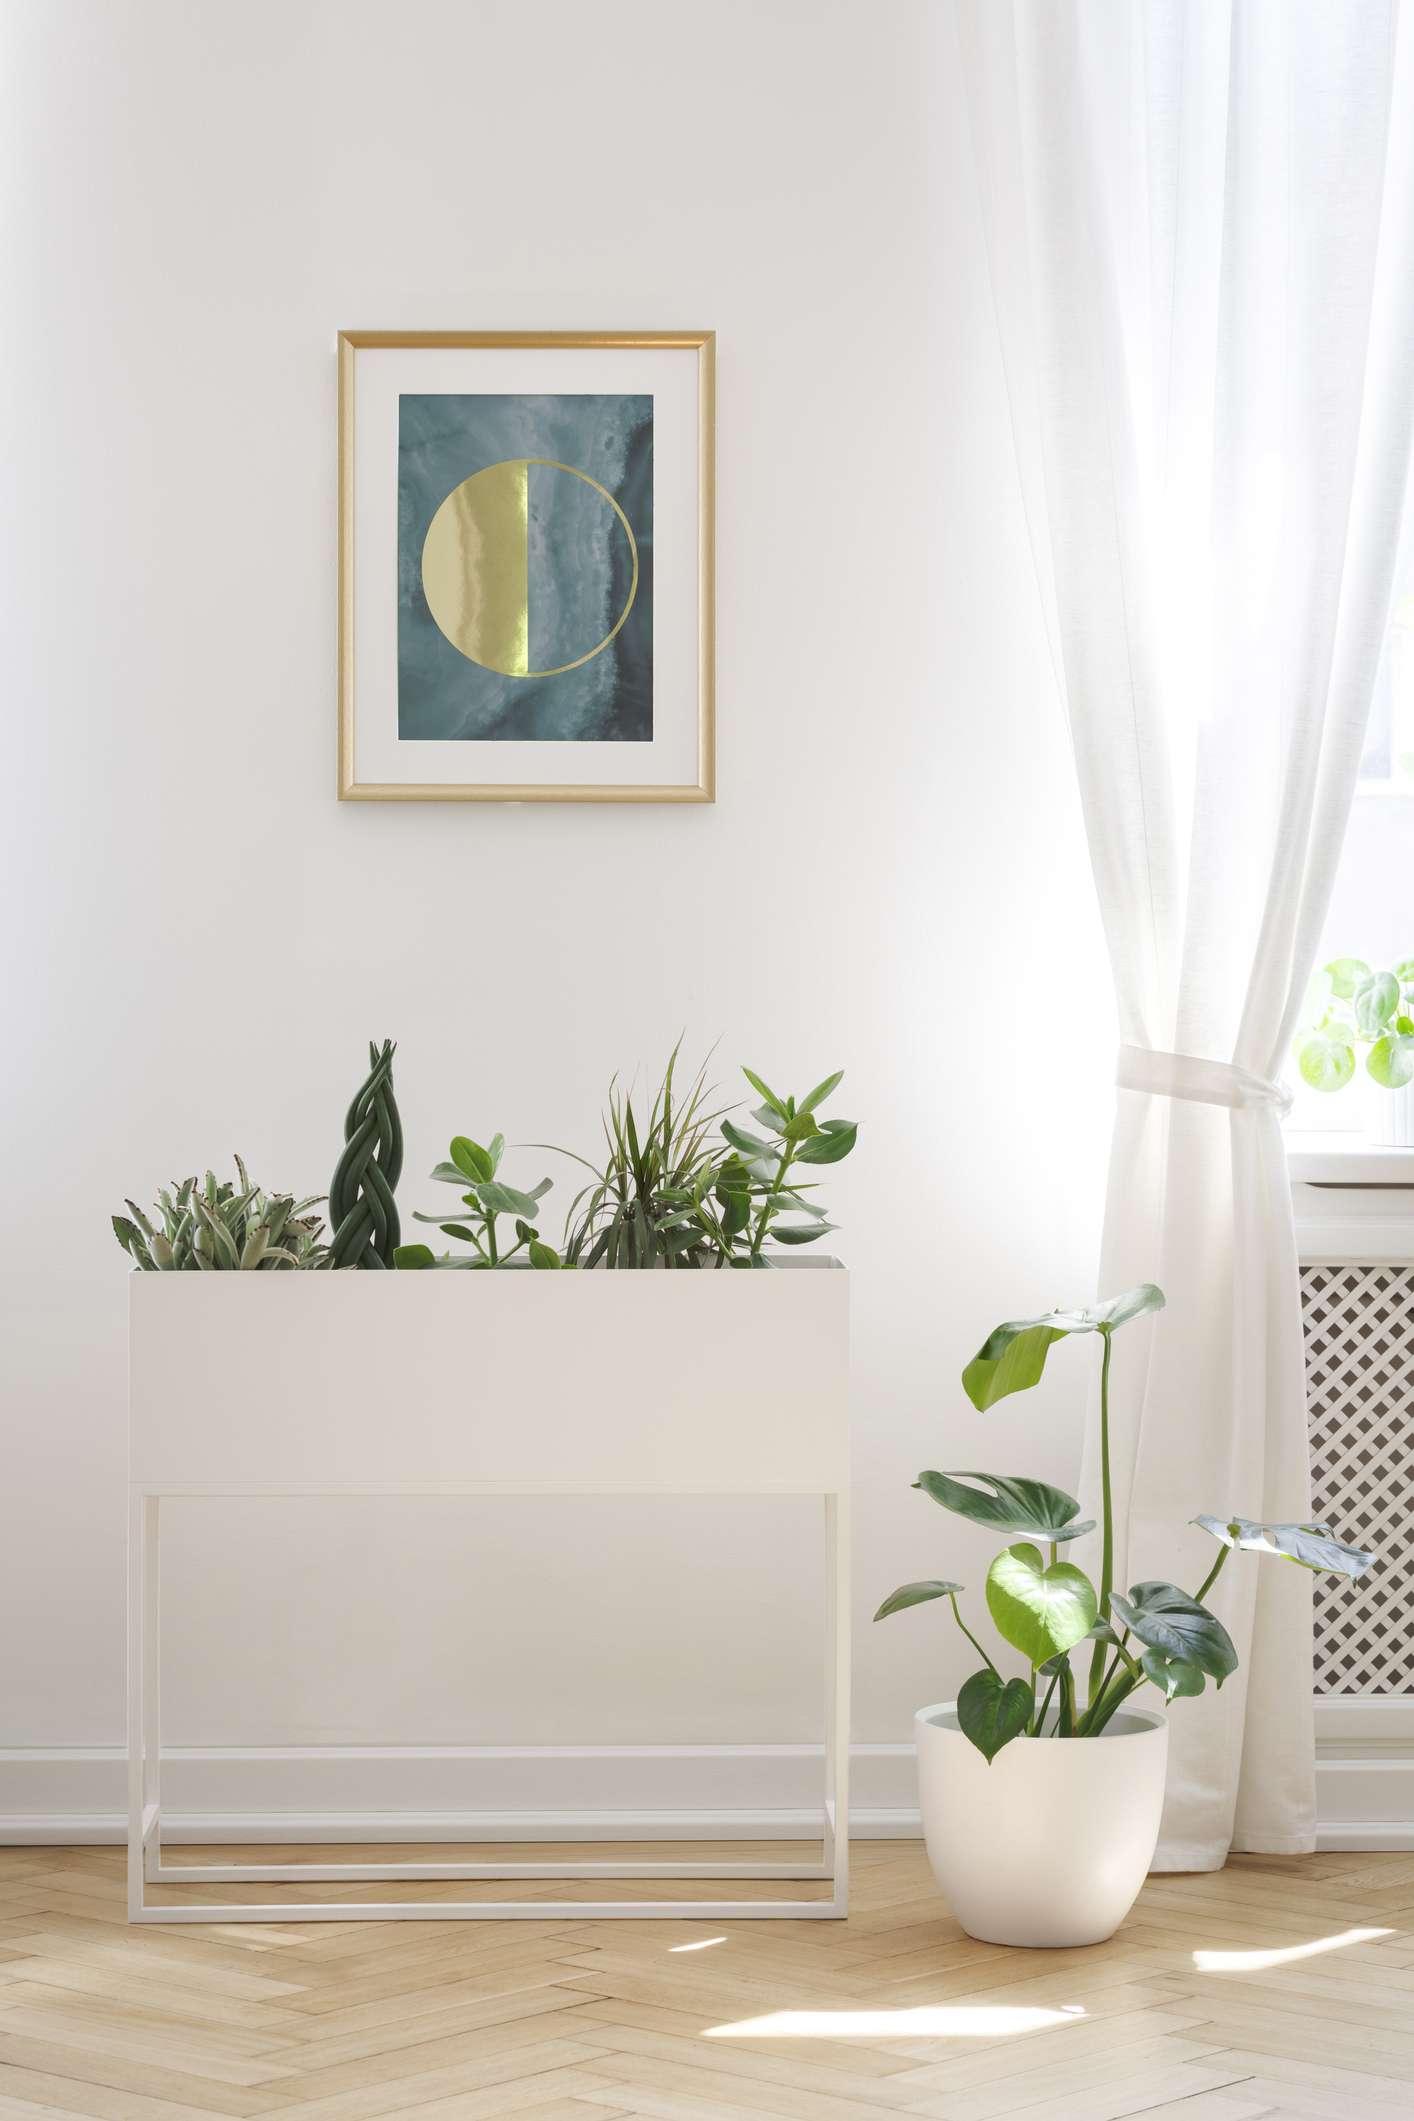 Poster an weißer Wand über Pflanzen im Wohnzimmer mit Vorhängen am Fenster.